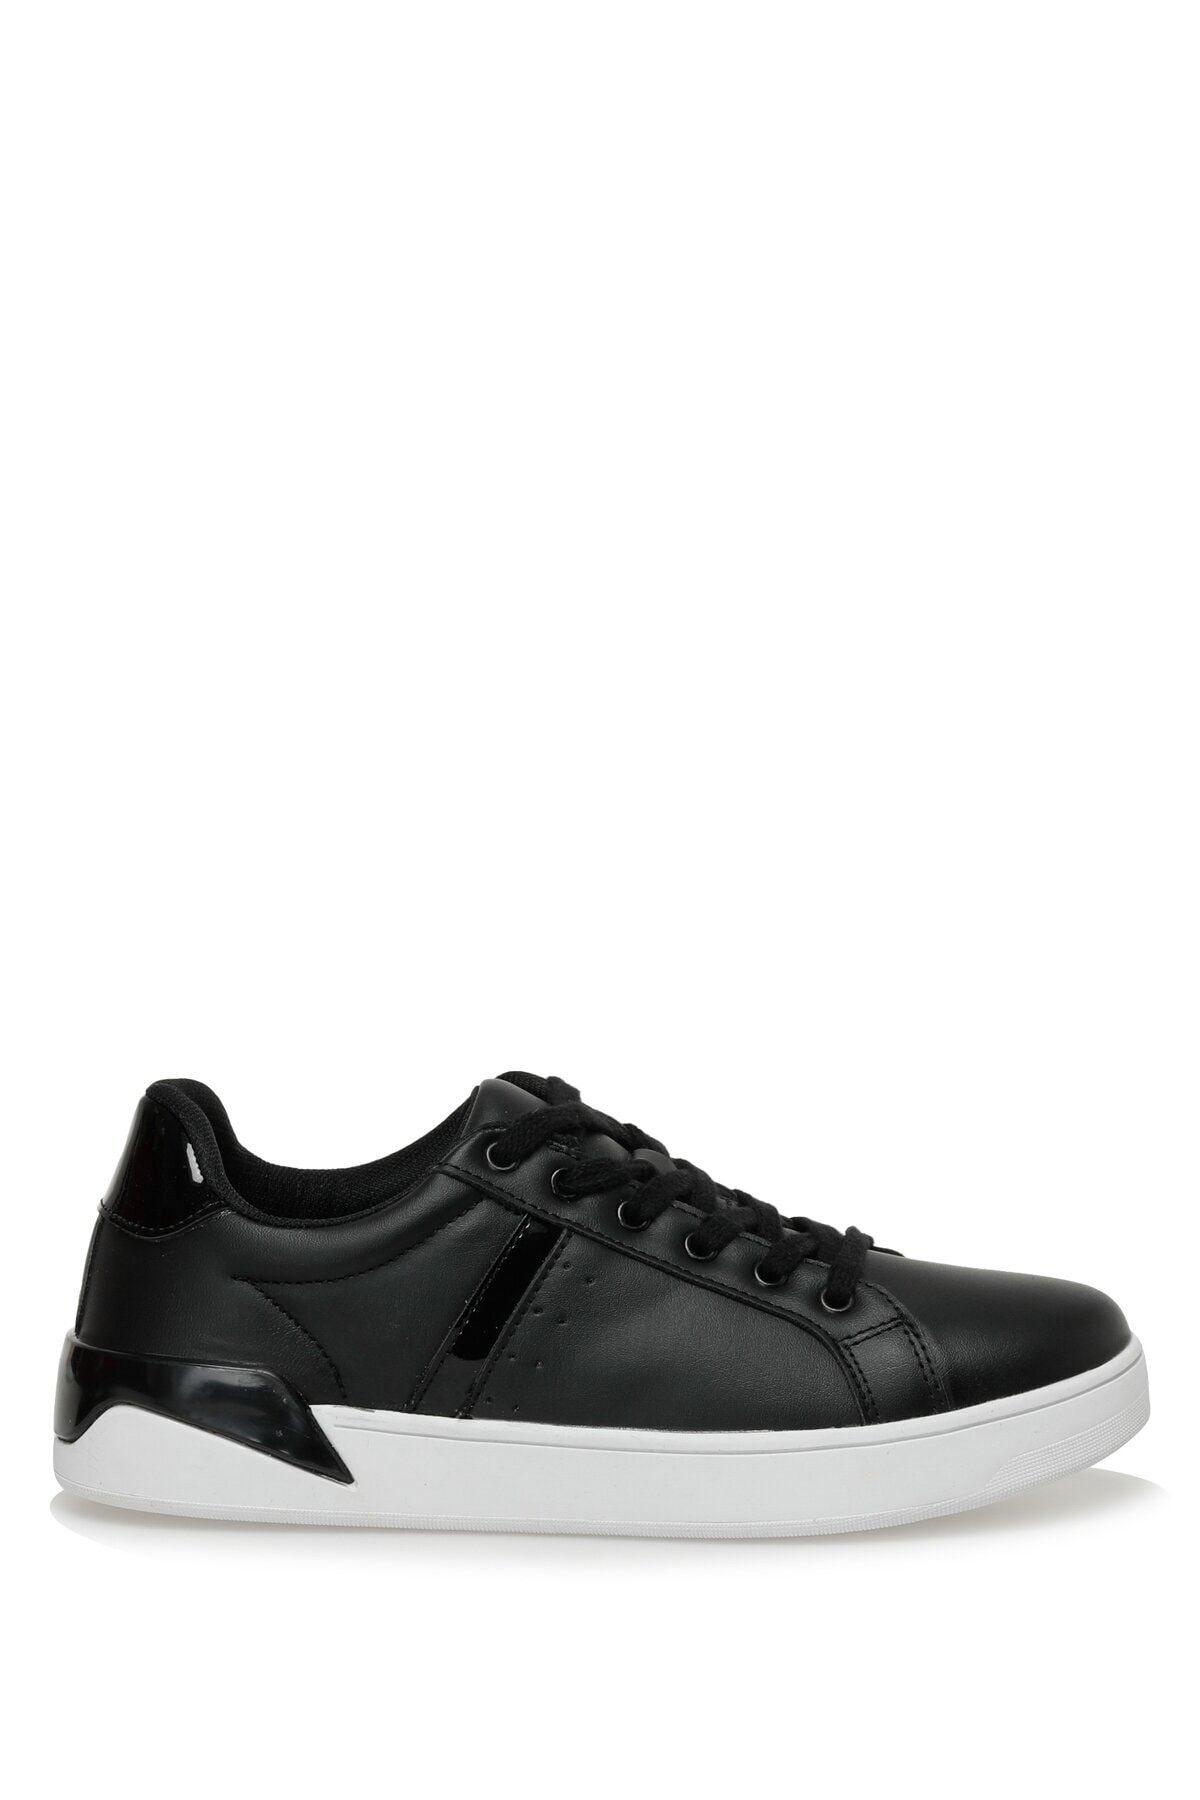 Polaris 321547.z 3fx Siyah Kadın Sneaker